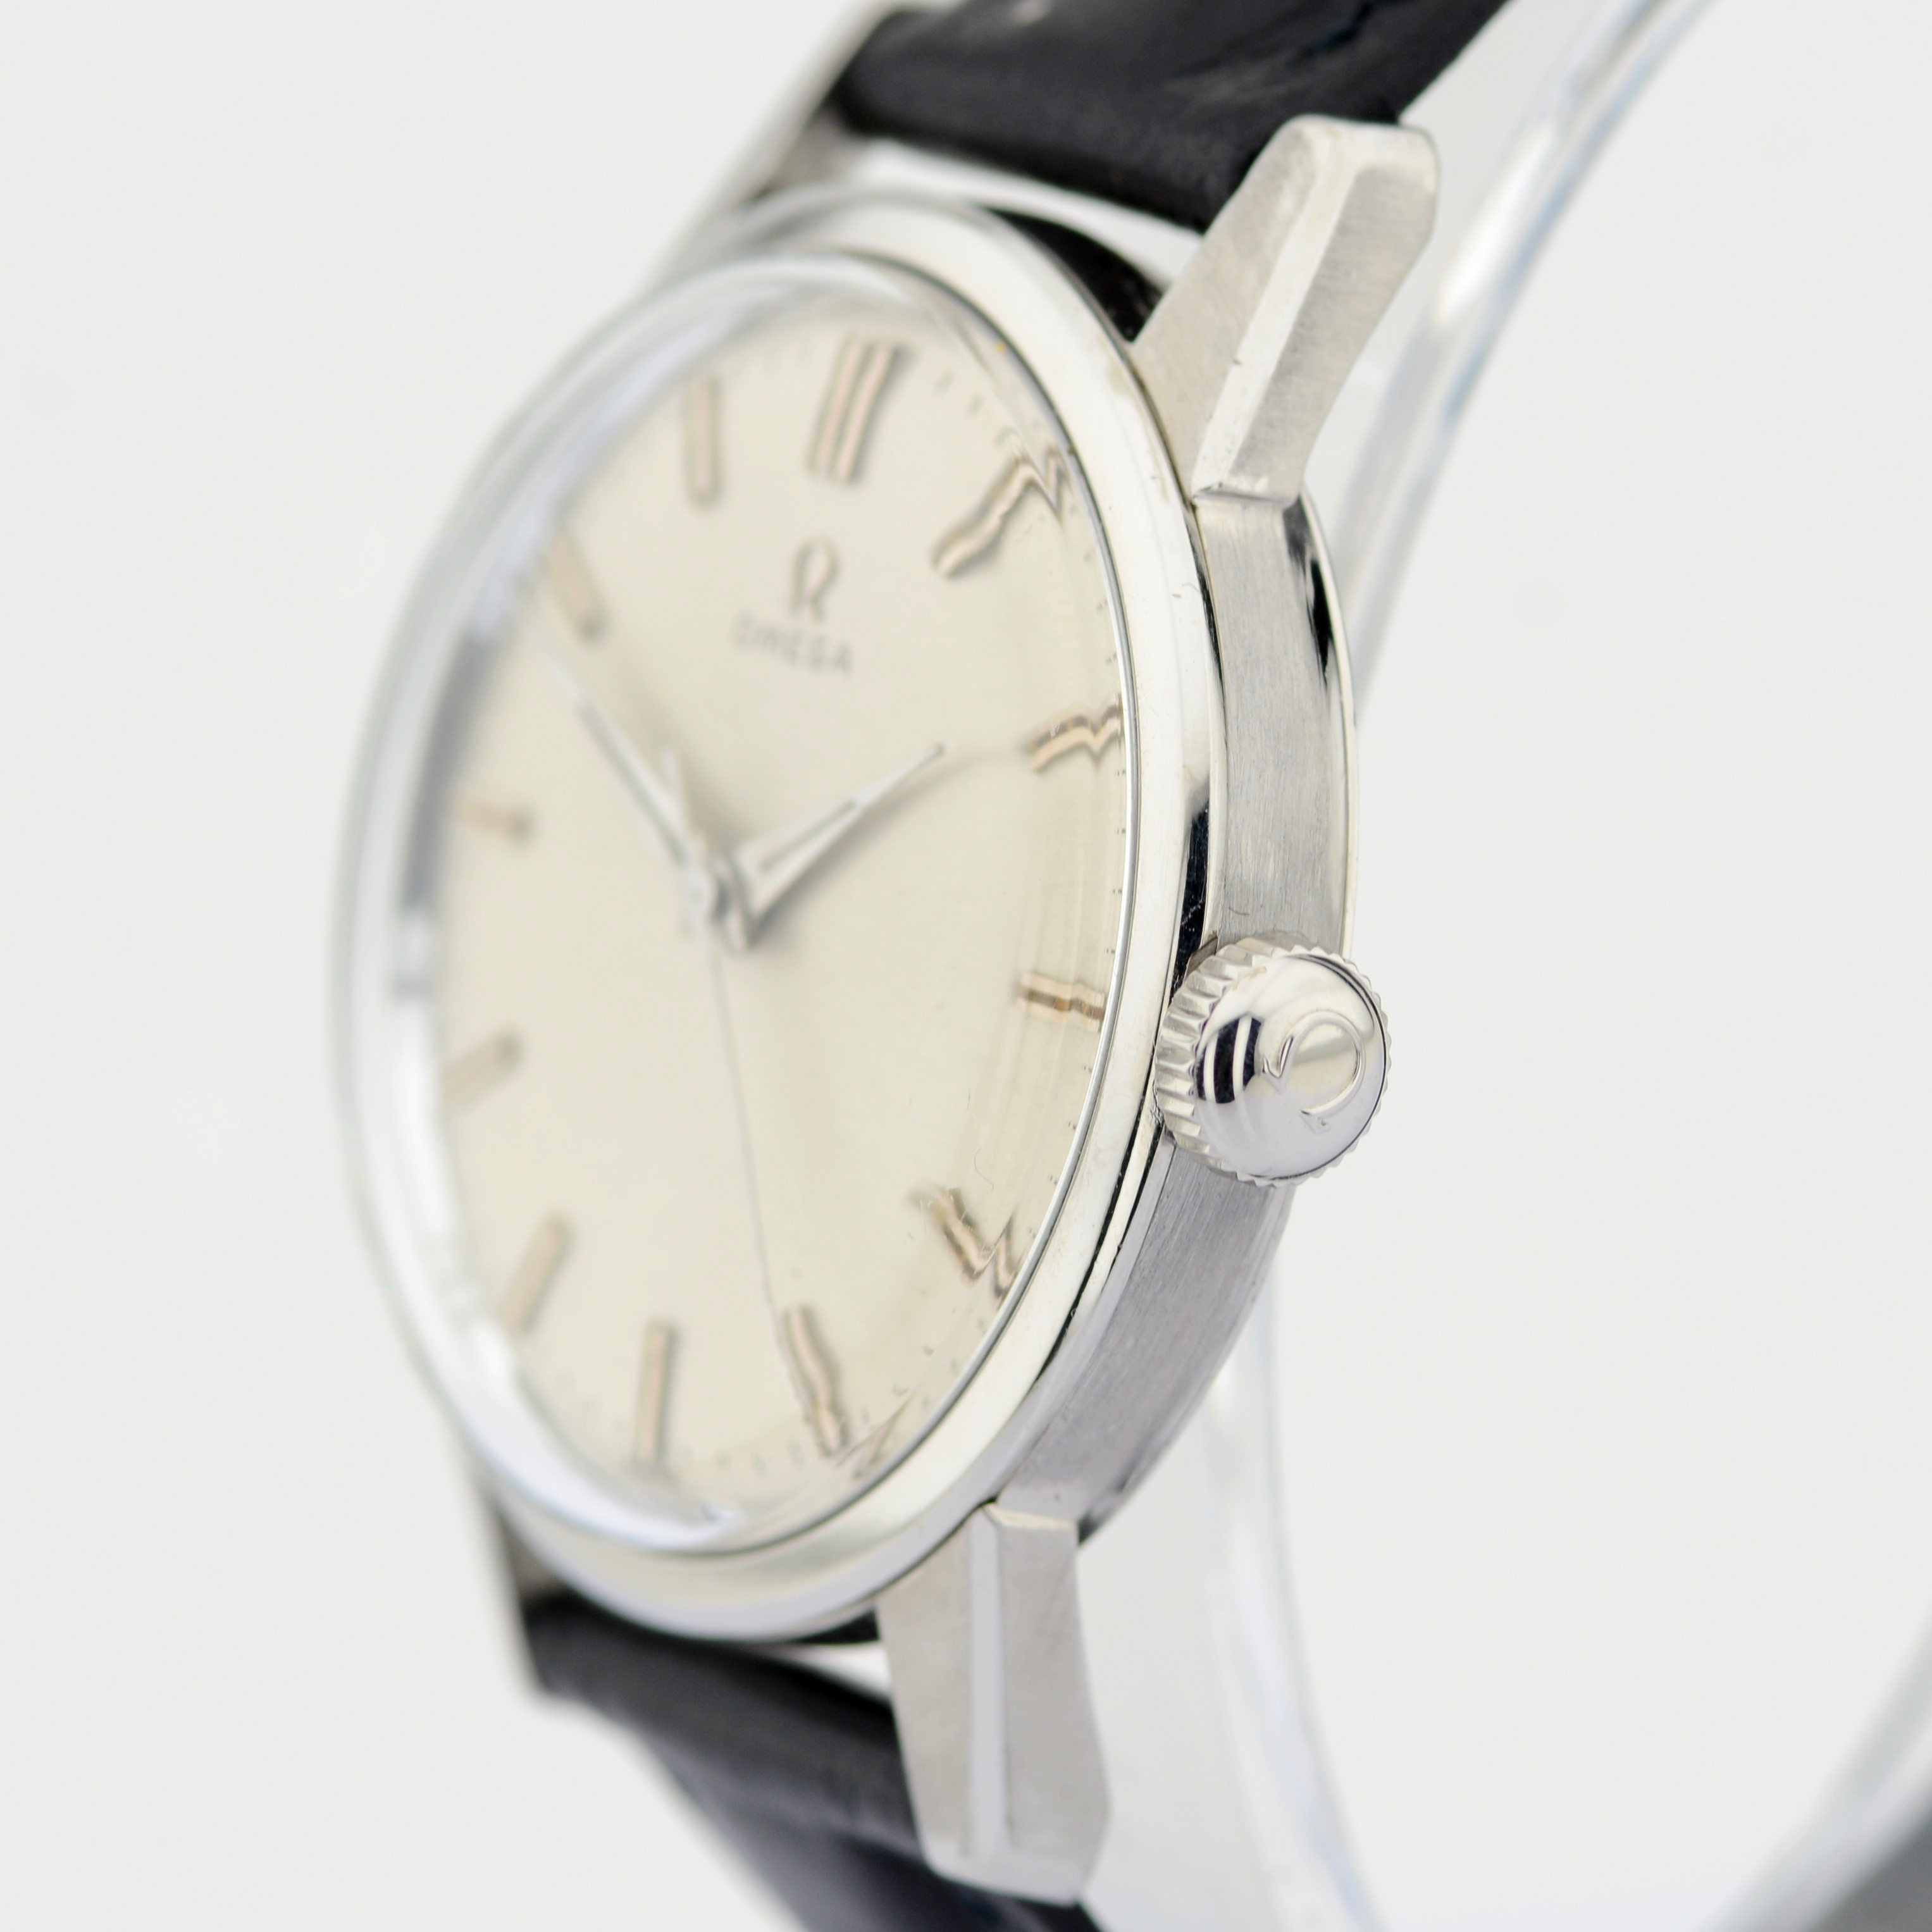 Omega / Seamaster 35 mm - Gentlmen's Steel Wrist Watch - Image 2 of 9